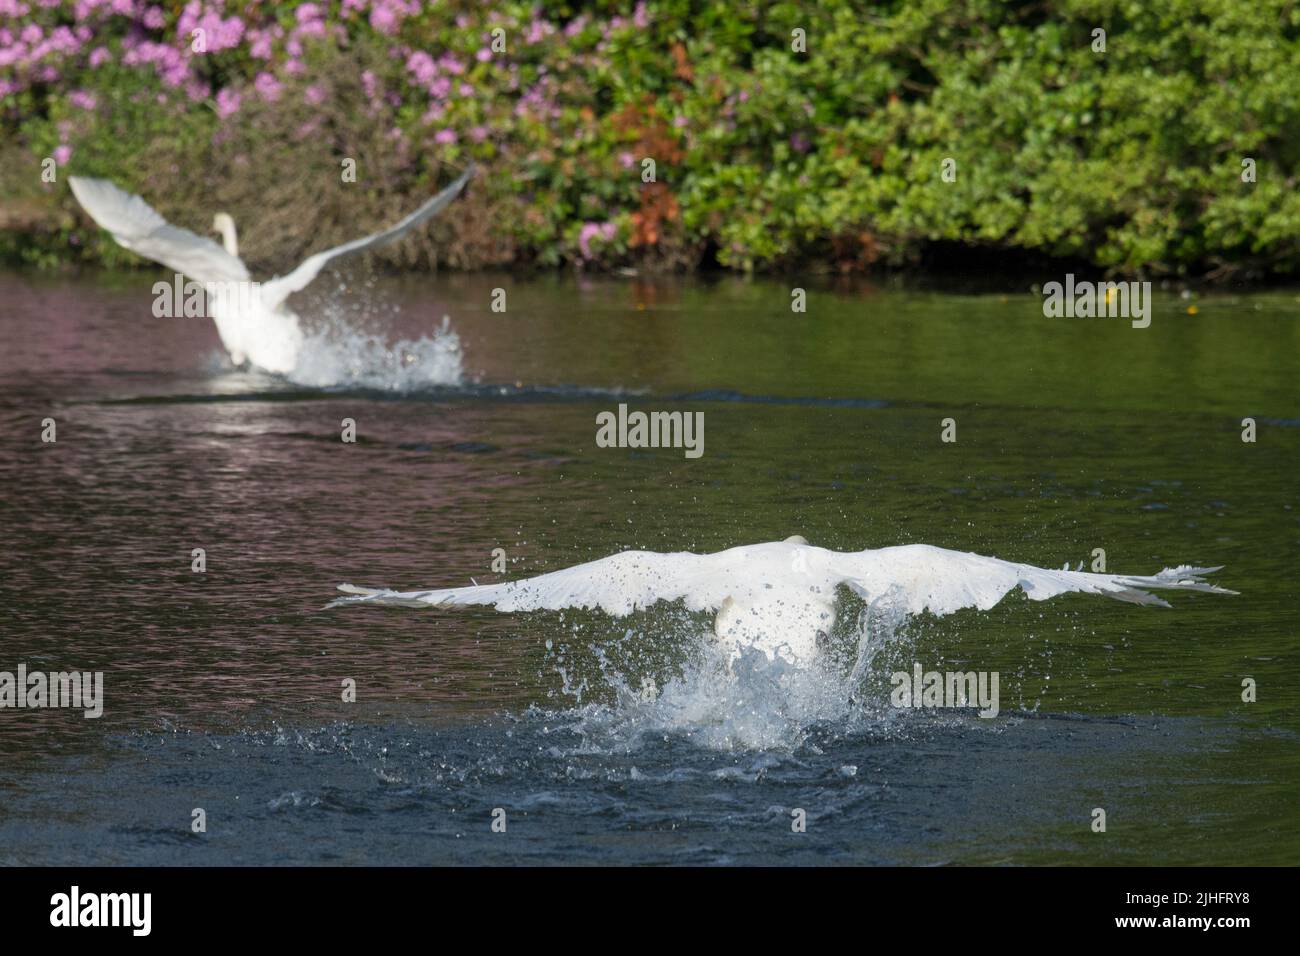 Mut Swan, Cygnus olor, verjagt einen anderen Schwan mit seinen Flügeln, der versucht zu entkommen, Salhouse Broad, Norfolk, Juni Stockfoto